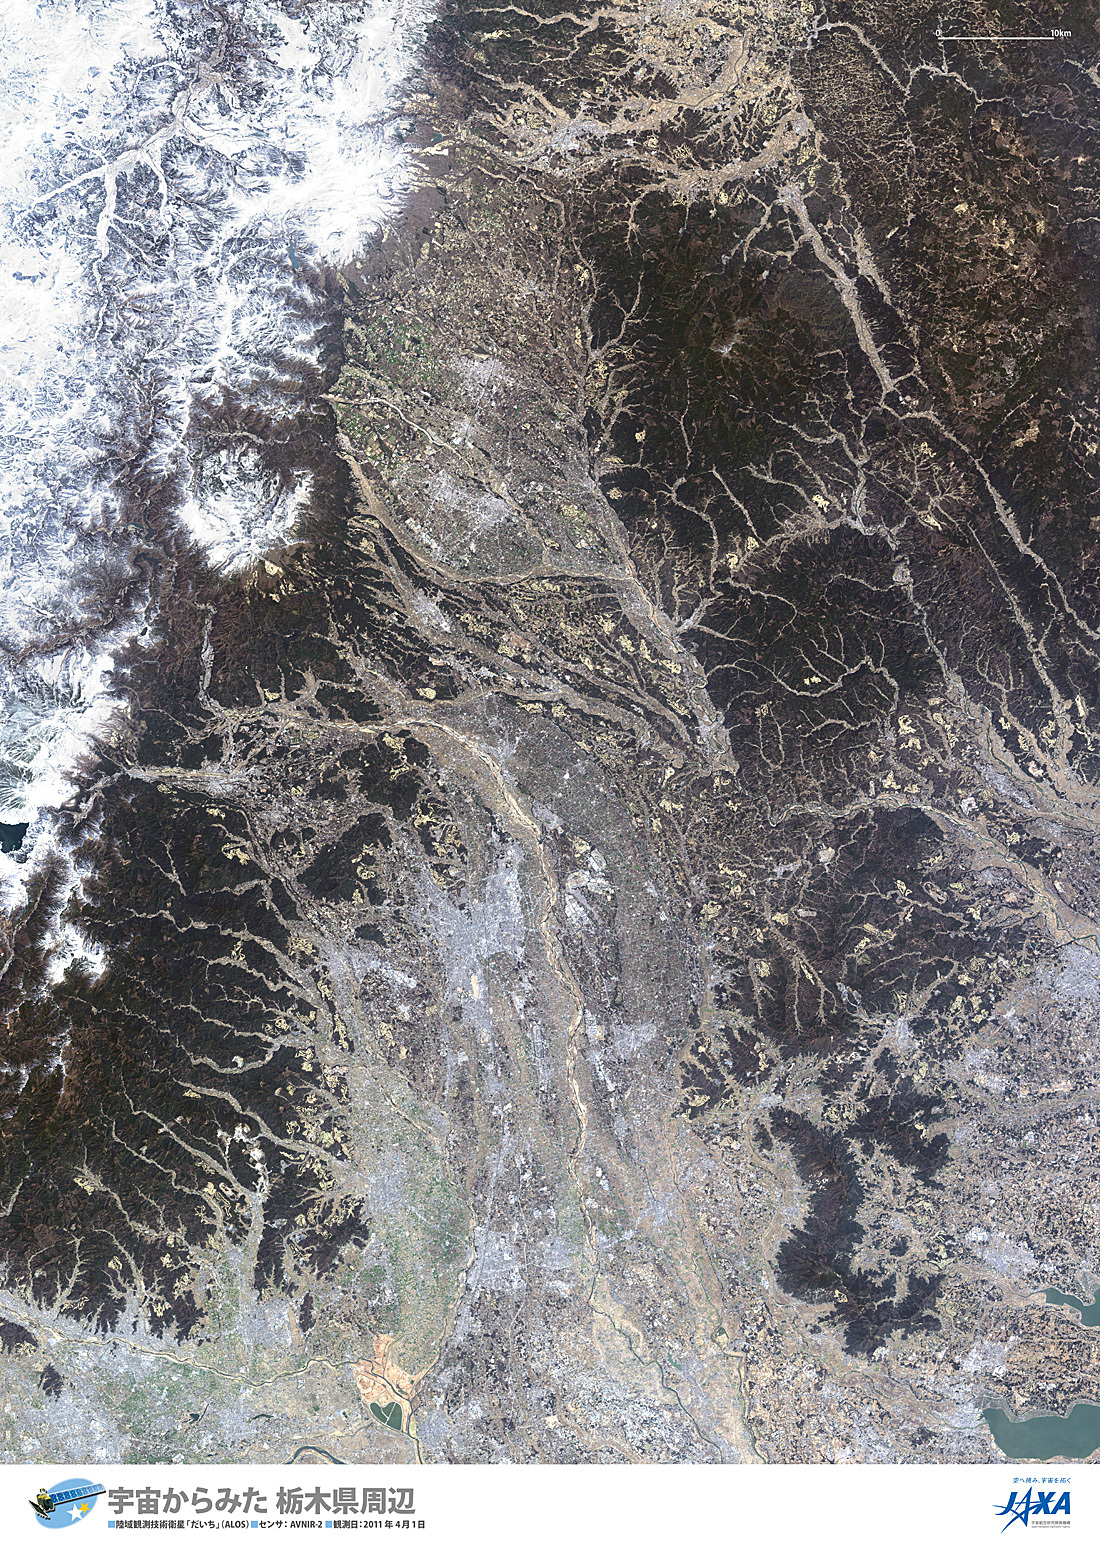 だいちから見た日本の都市 栃木県:衛星画像（ポスター仕上げ）